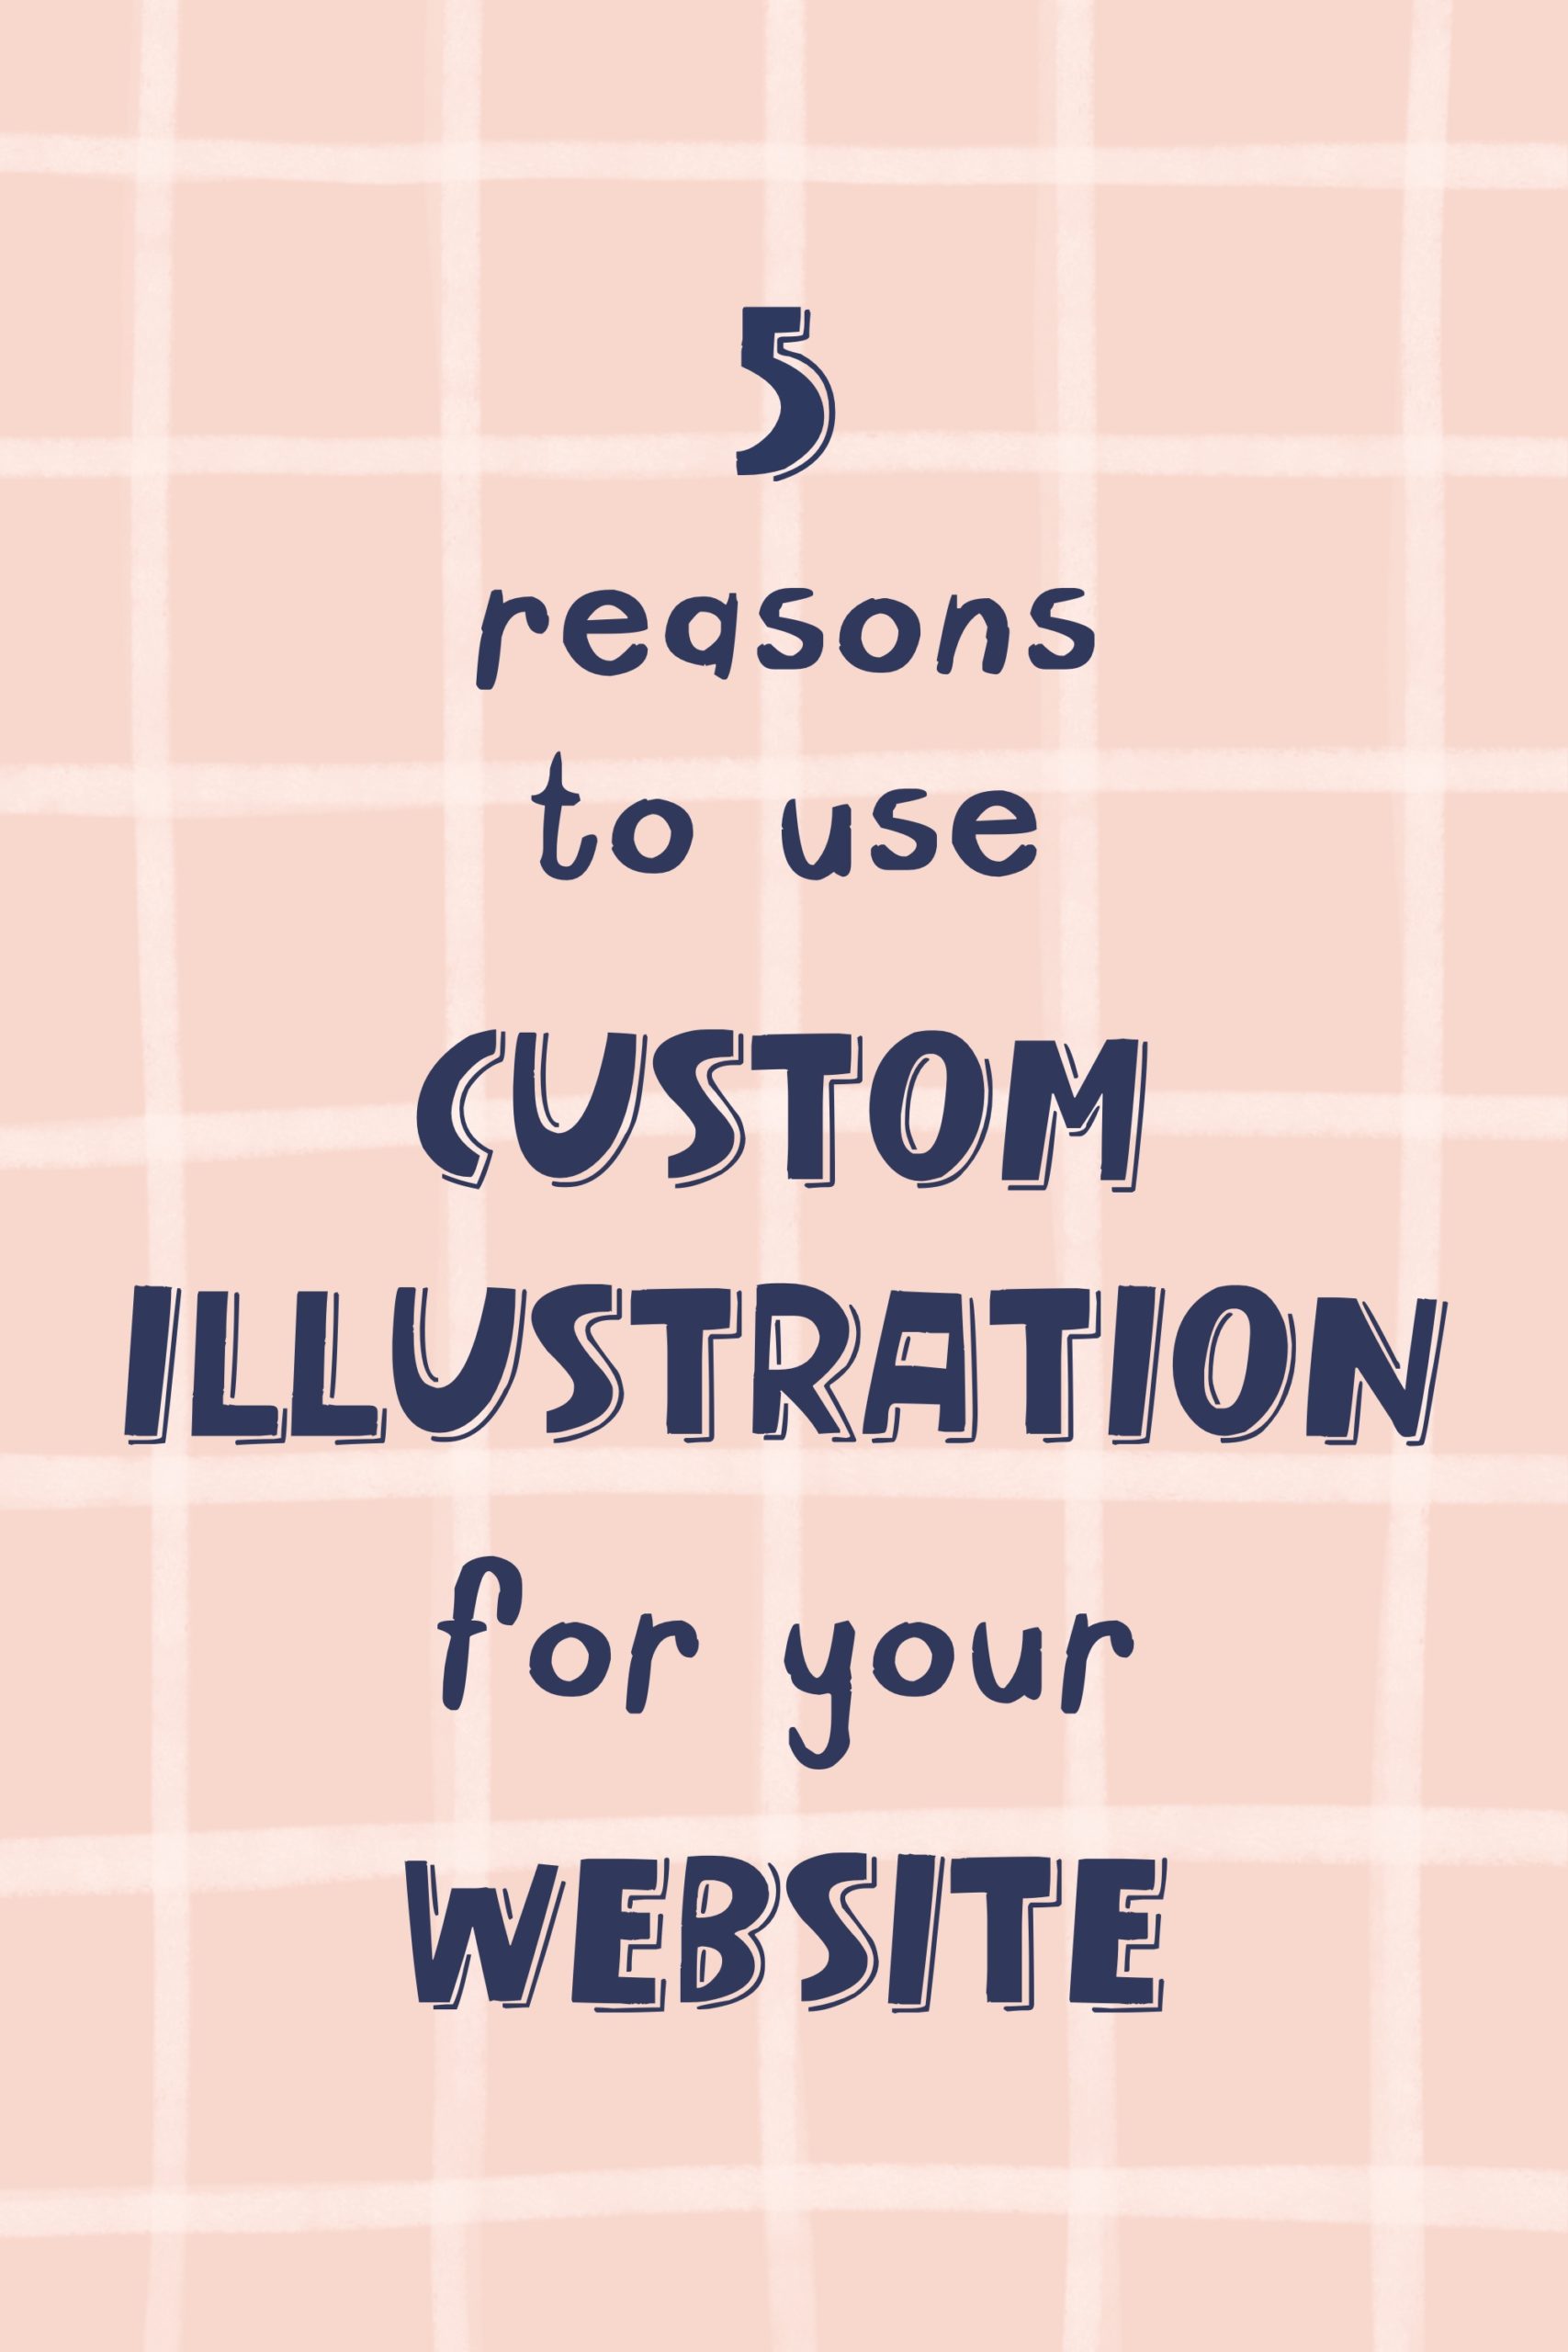 Custom illustration for website